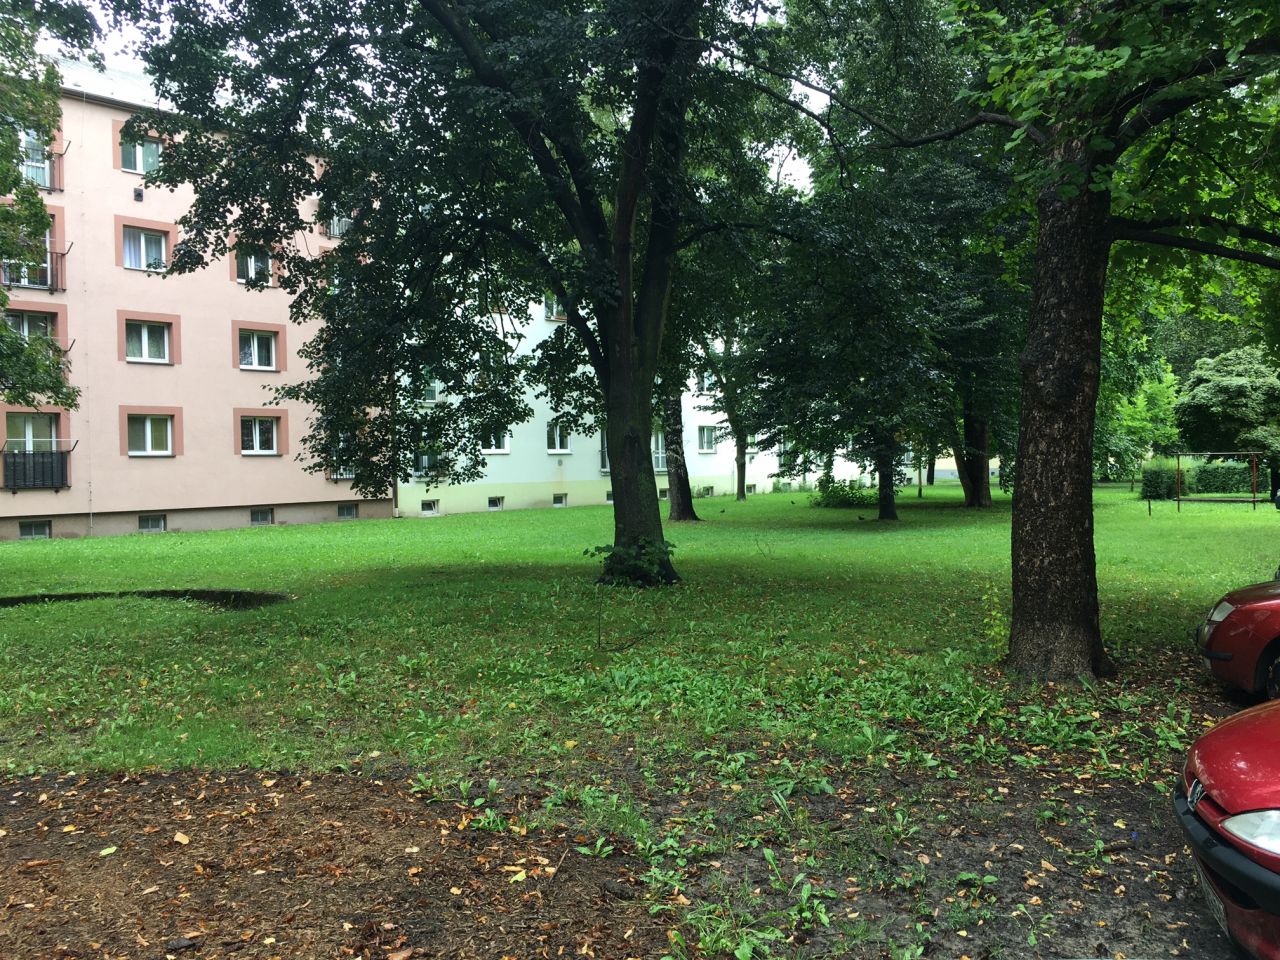 Pronájem bytu 1+1 35 m2, ul. Čujkovova 1735/26, Ostrava - Zábřeh 